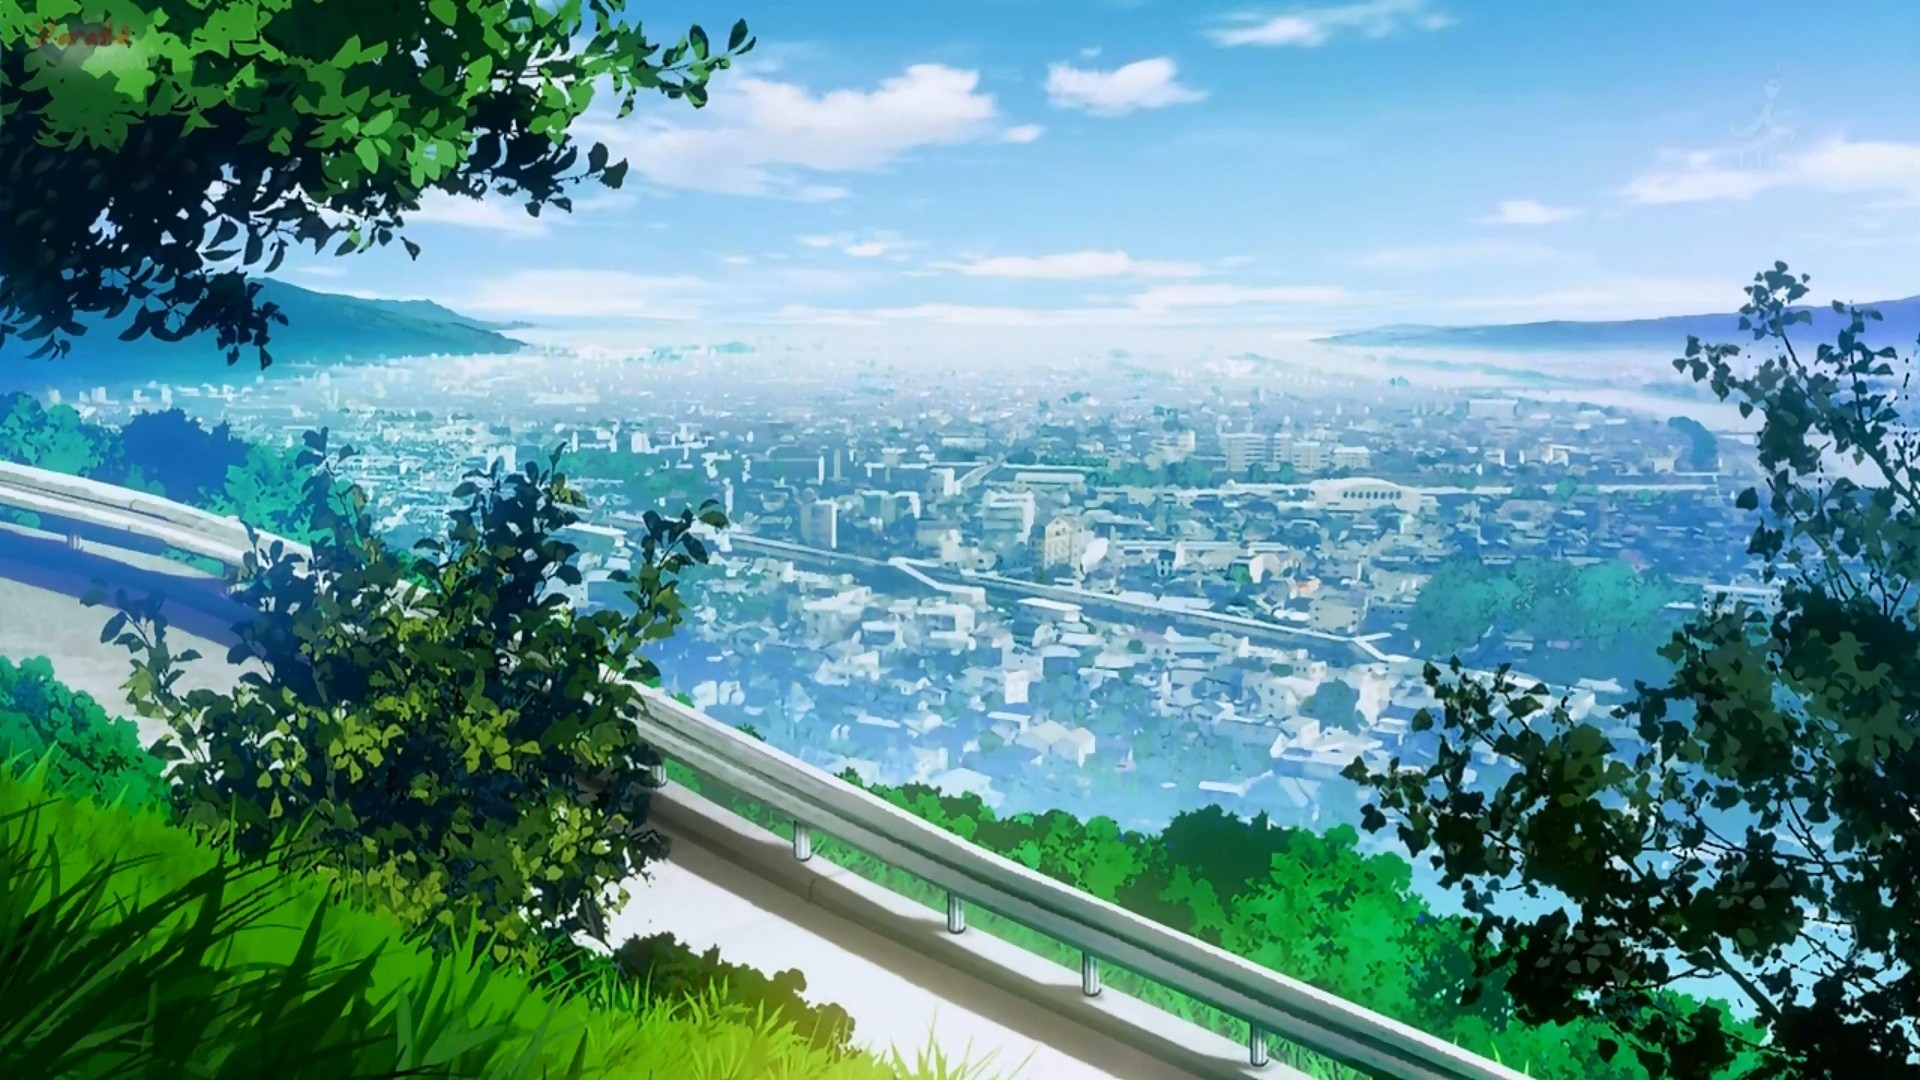 Anime Scenery - Anime City